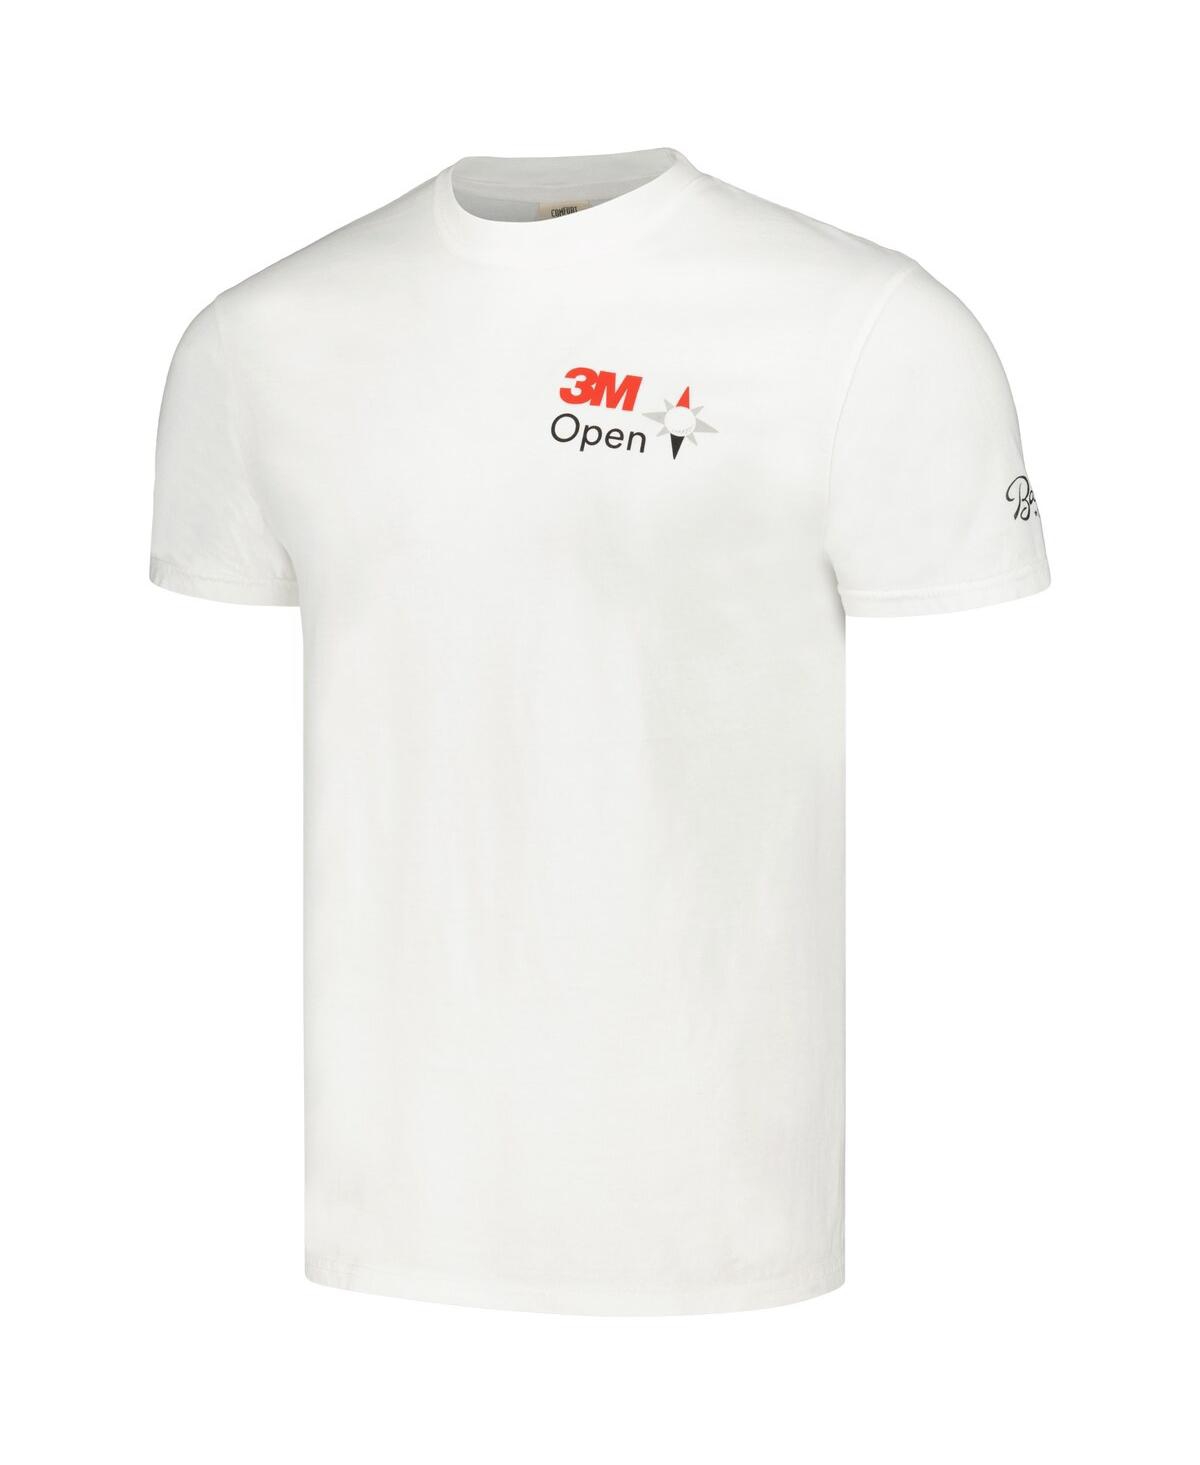 Shop Barstool Golf Men's  White 3m Open T-shirt